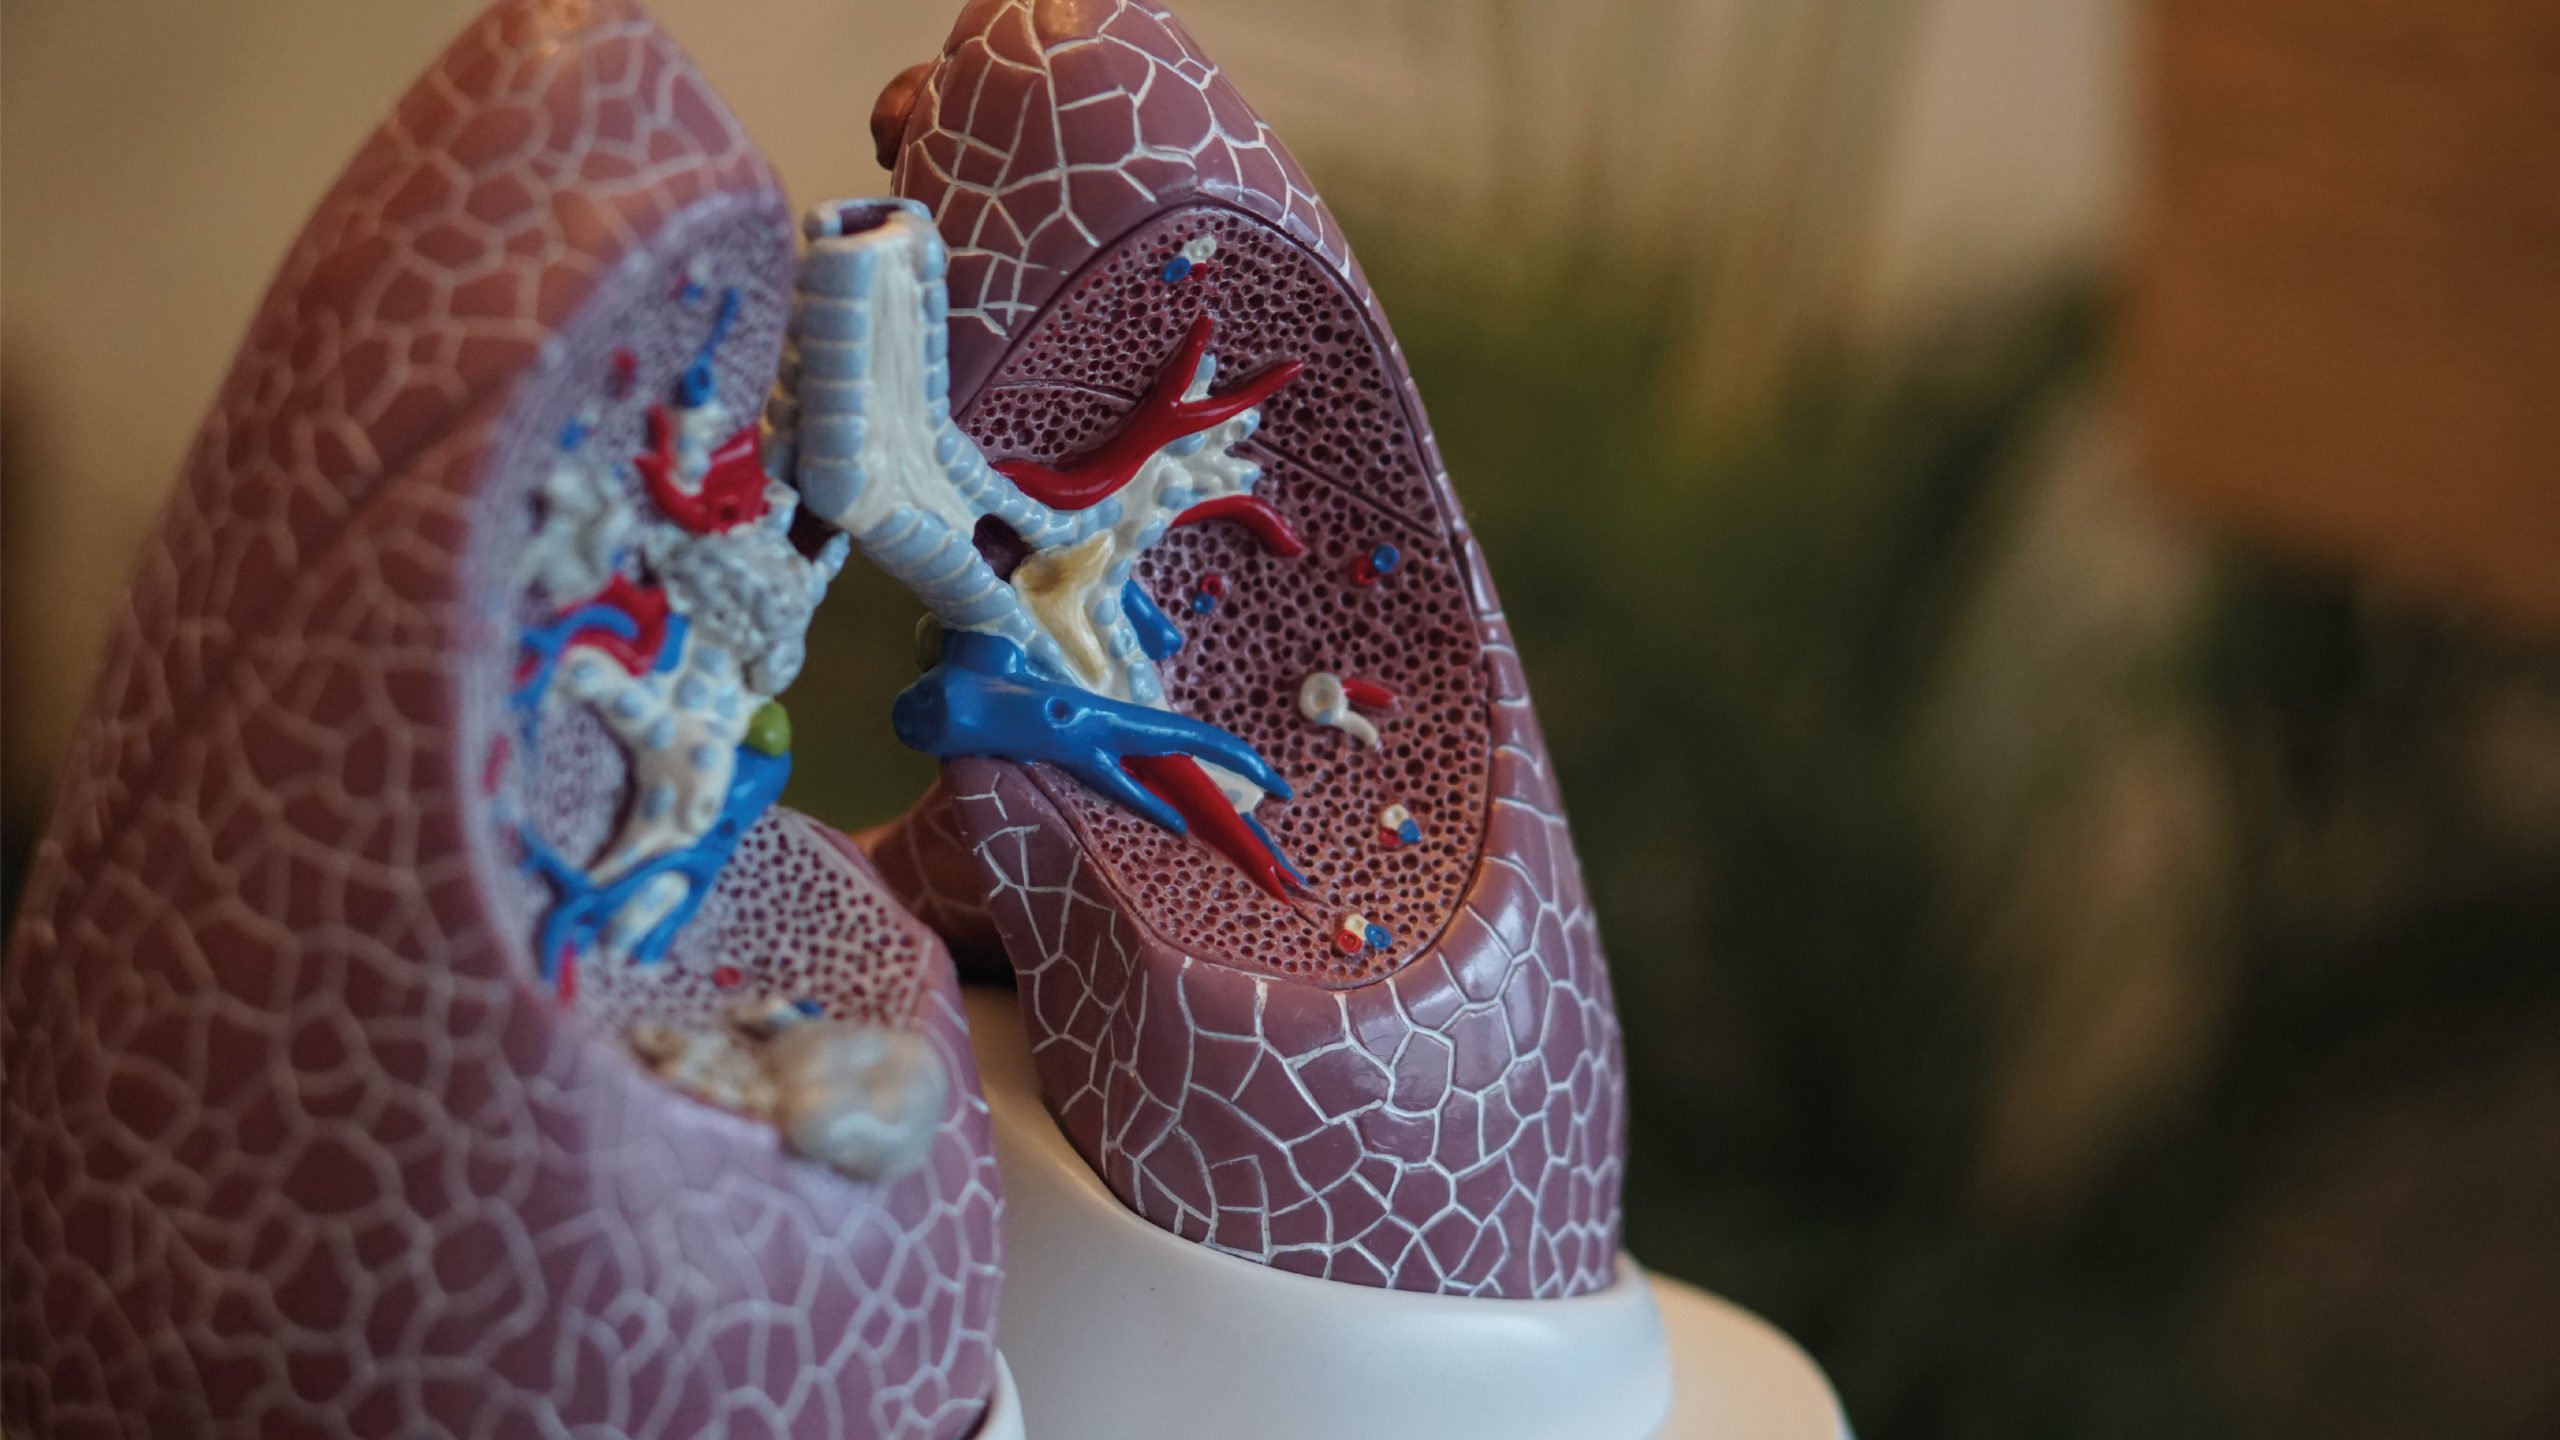 El cáncer de pulmón puede matar a 160,000 latinoamericanos en una década: experto